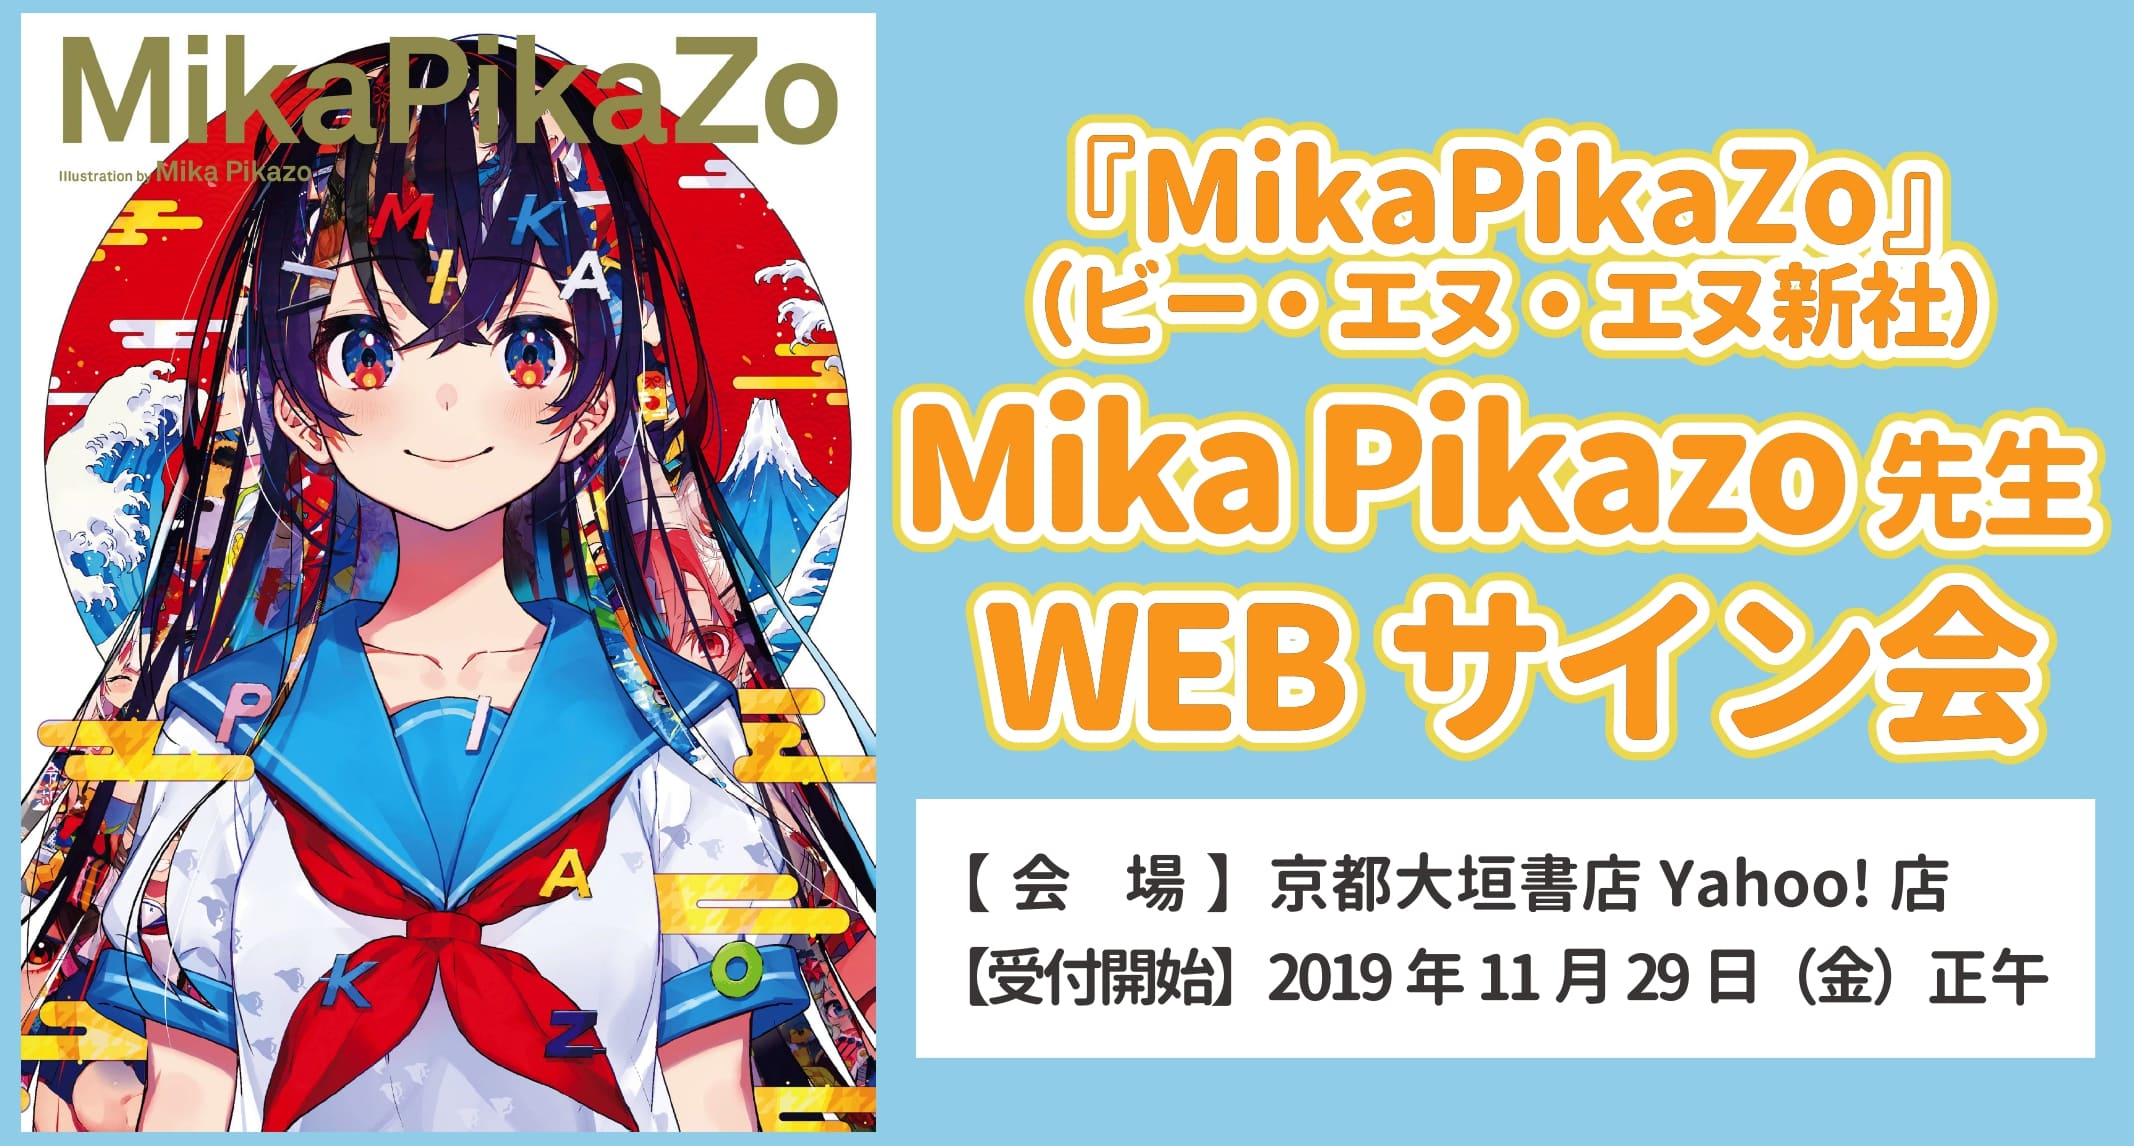 予約満了 Mikapikazo Mika Pikazo先生webサイン会のお知らせ 大垣書店 大垣書店